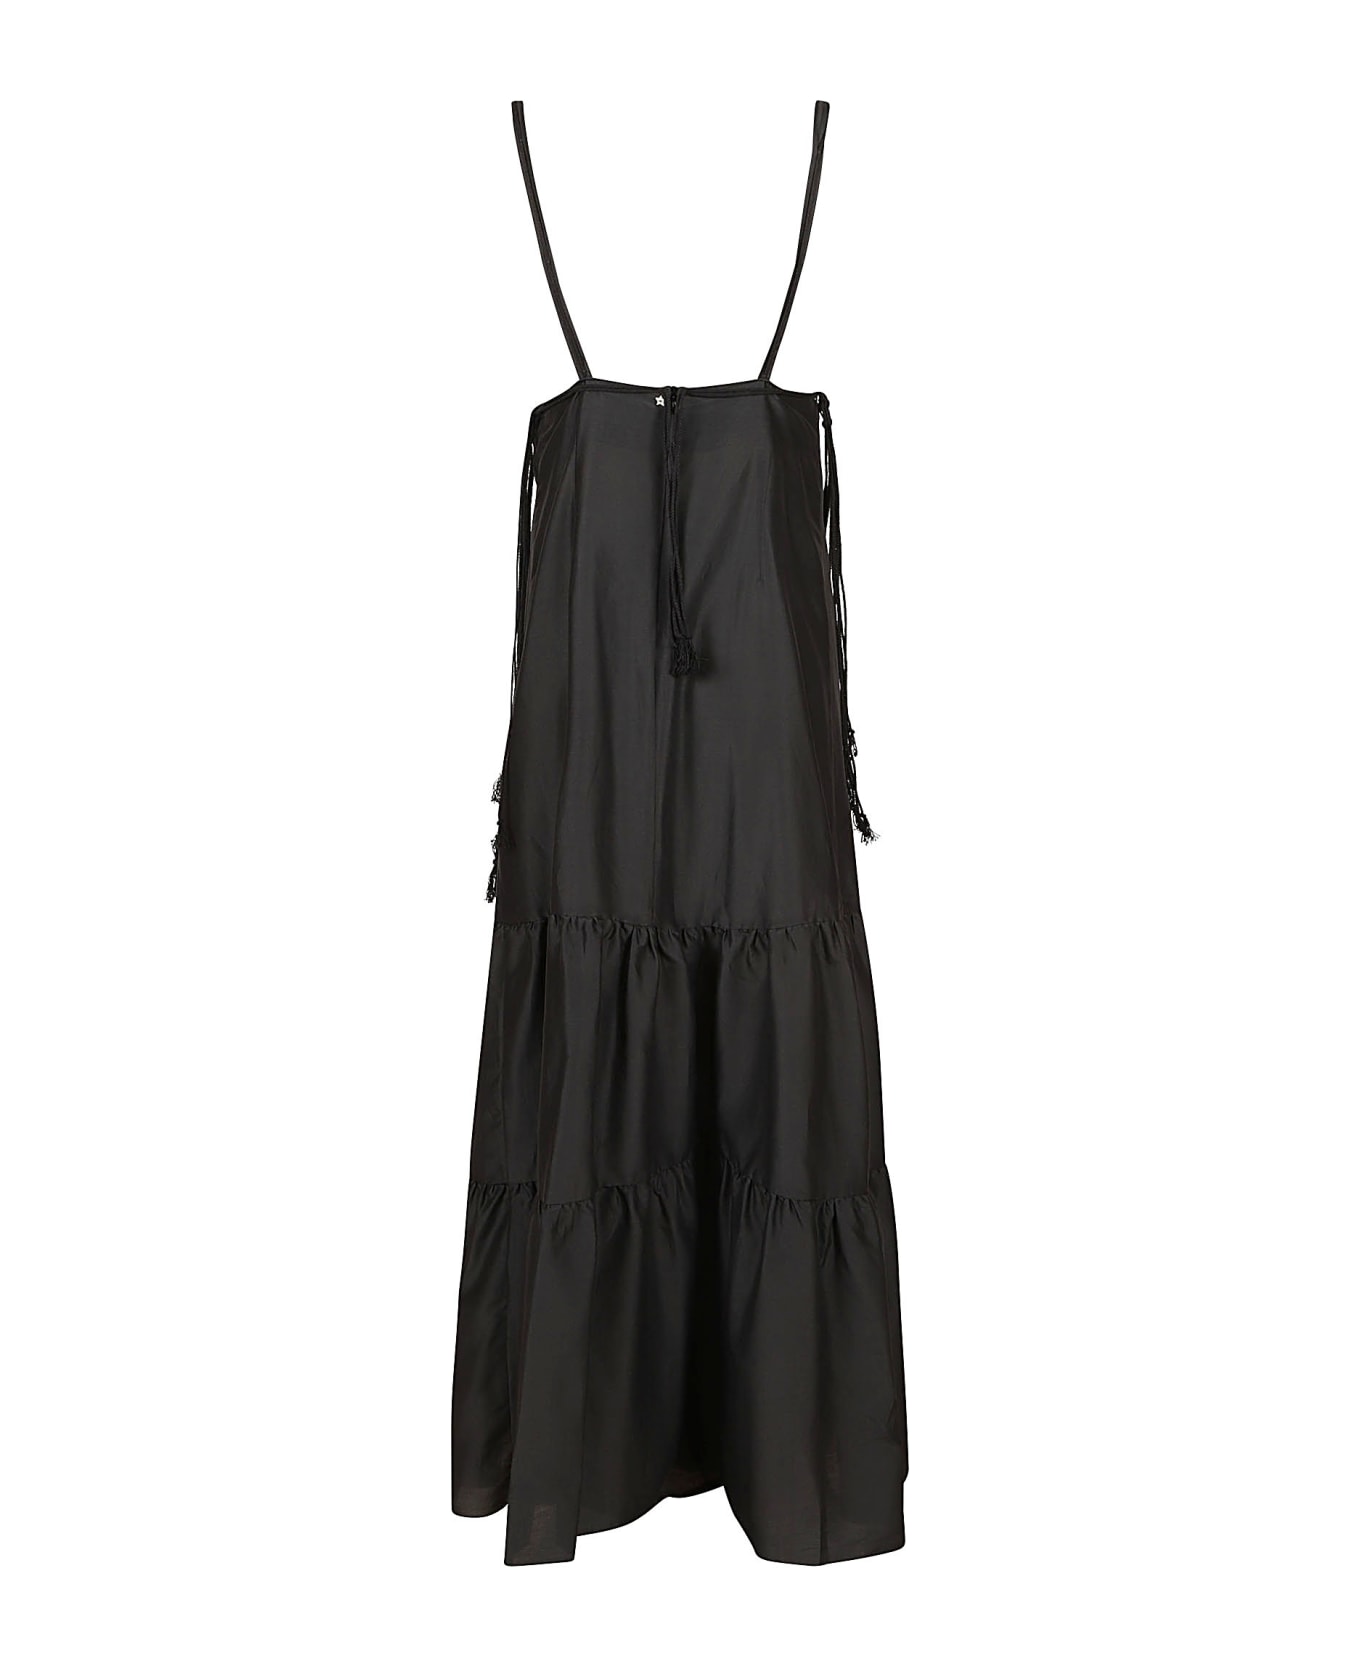 Lorena Antoniazzi Tassel Detail Sleeveless Long Dress - Black